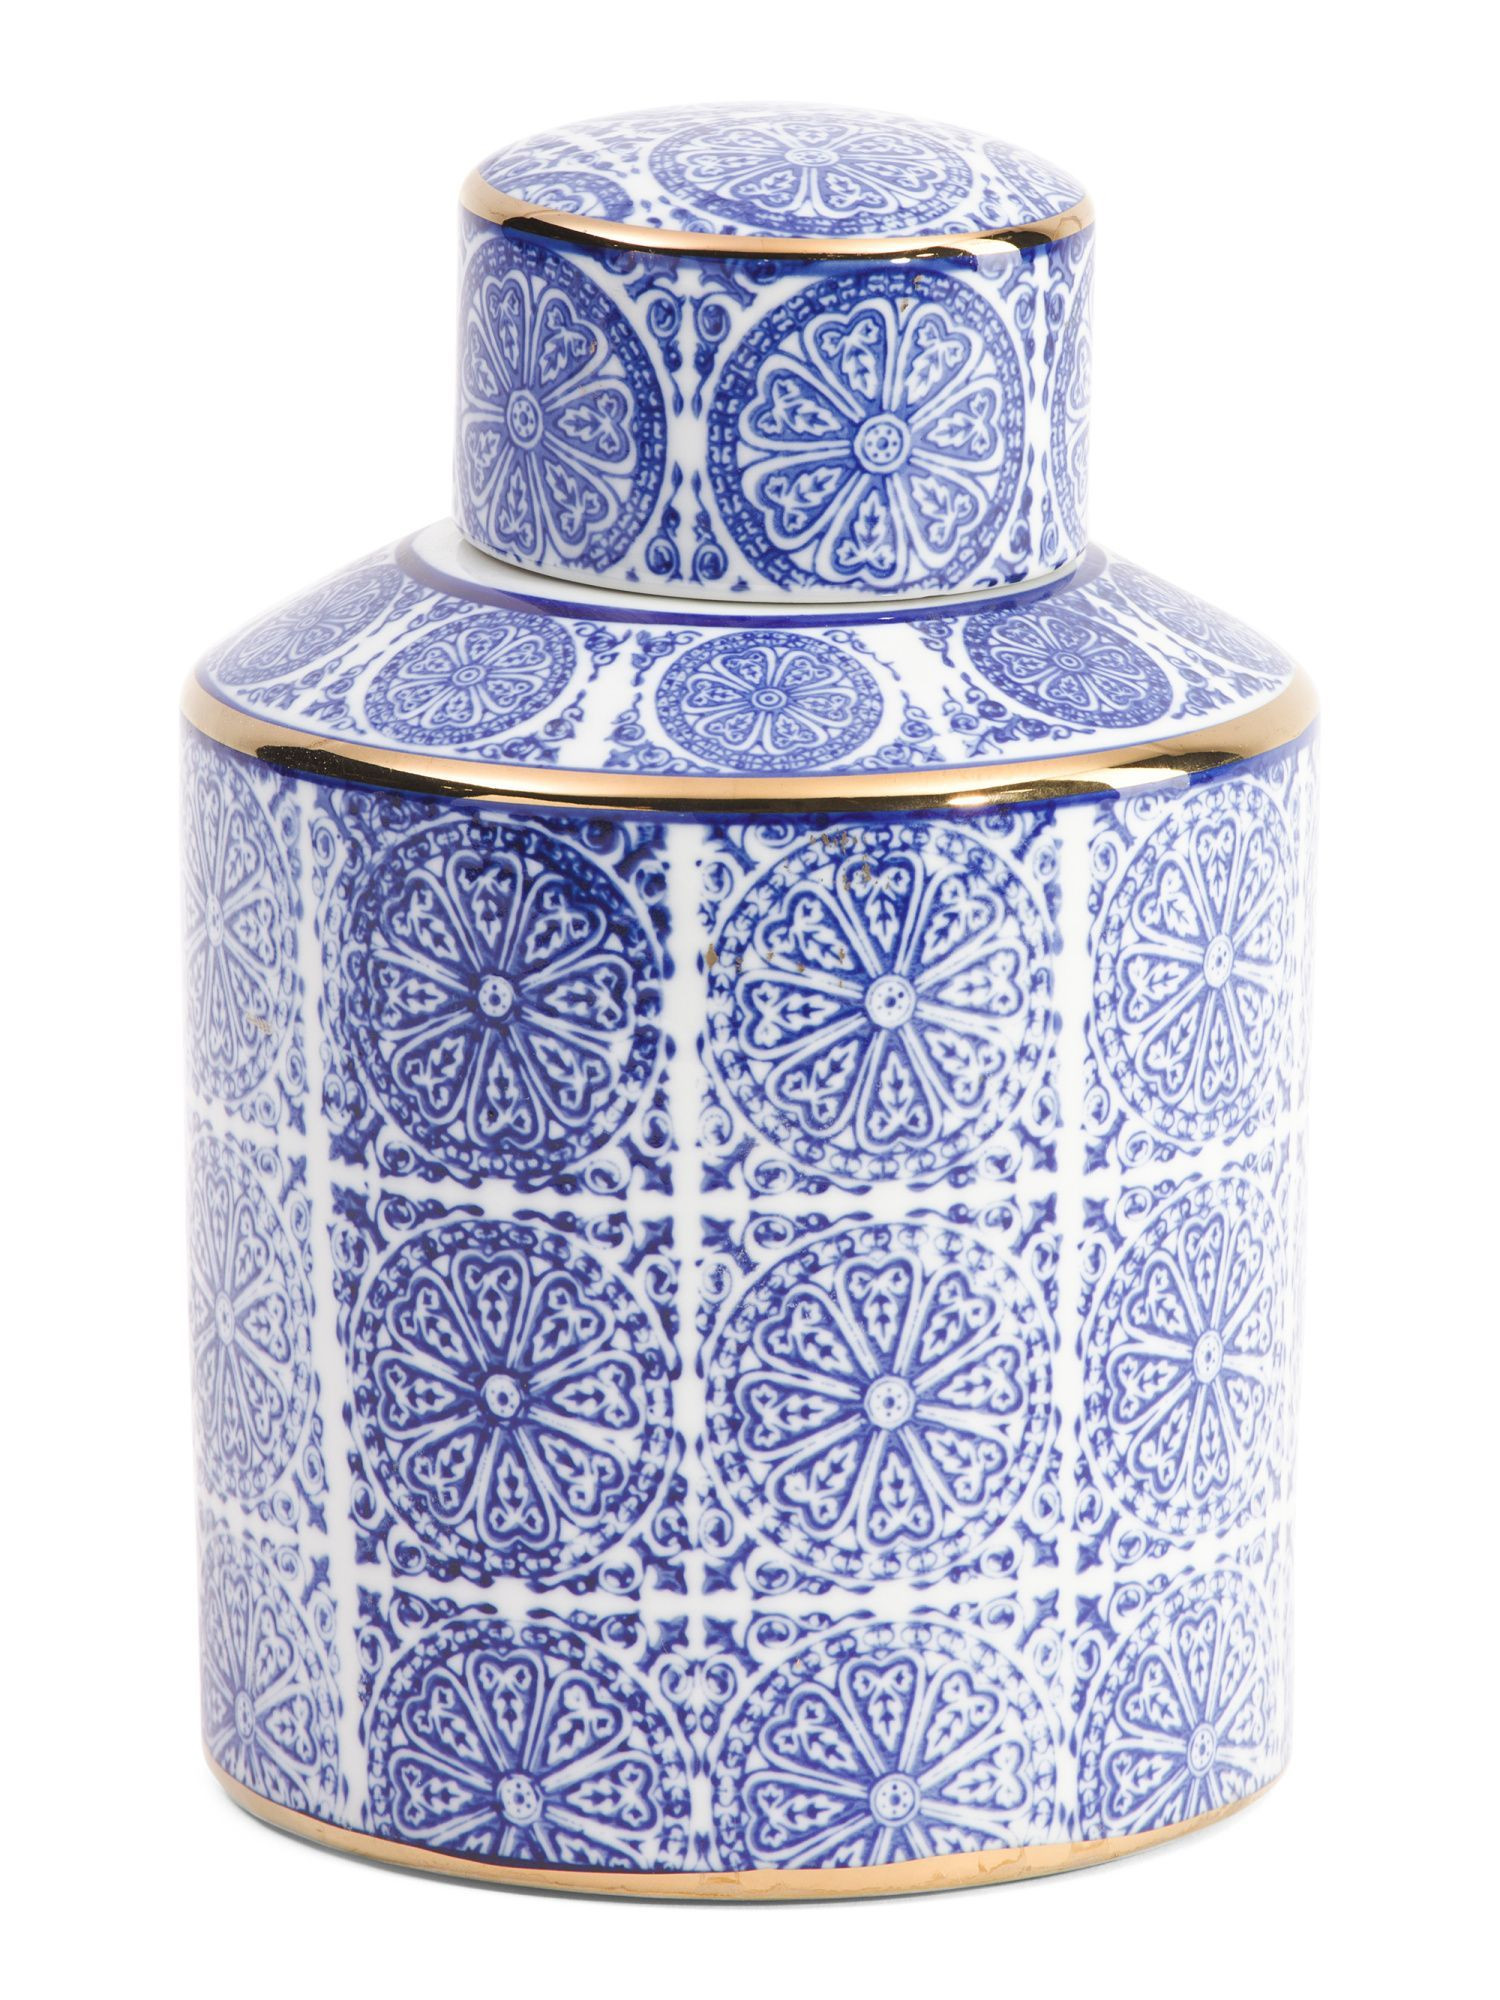 28 Ideal Tj Maxx Vases 2024 free download tj maxx vases of ceramic jar products pinterest ceramic jars jar and products regarding 84644b25e53603b31904e380f05edcfc